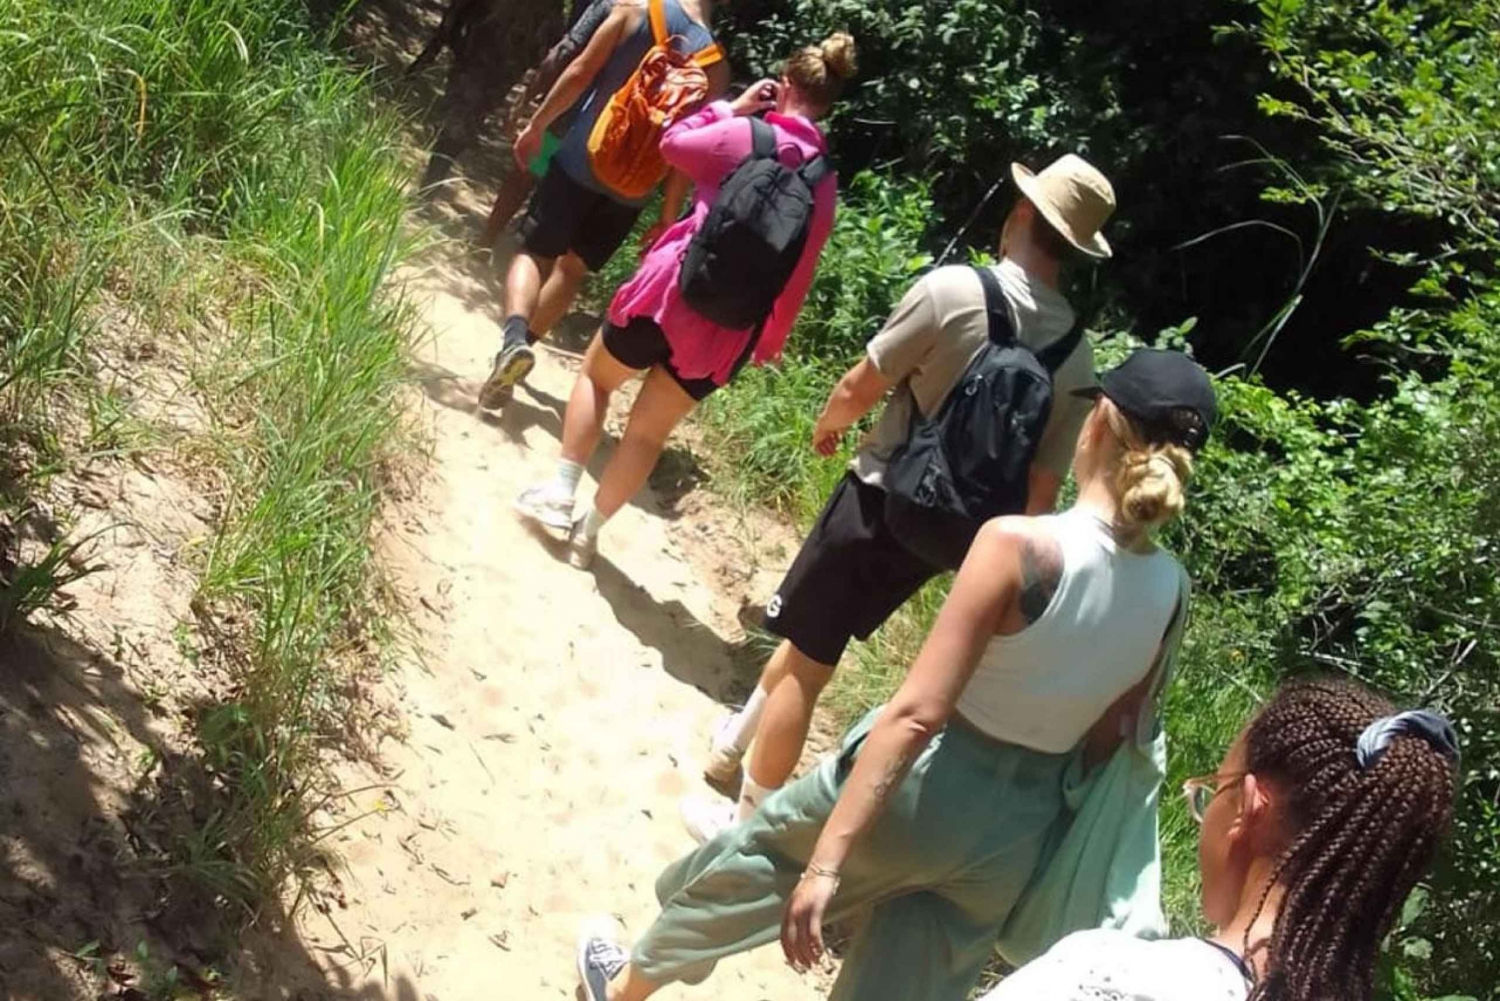 Dagvullende tour door de Shimba heuvels met Shifoga natuurpad